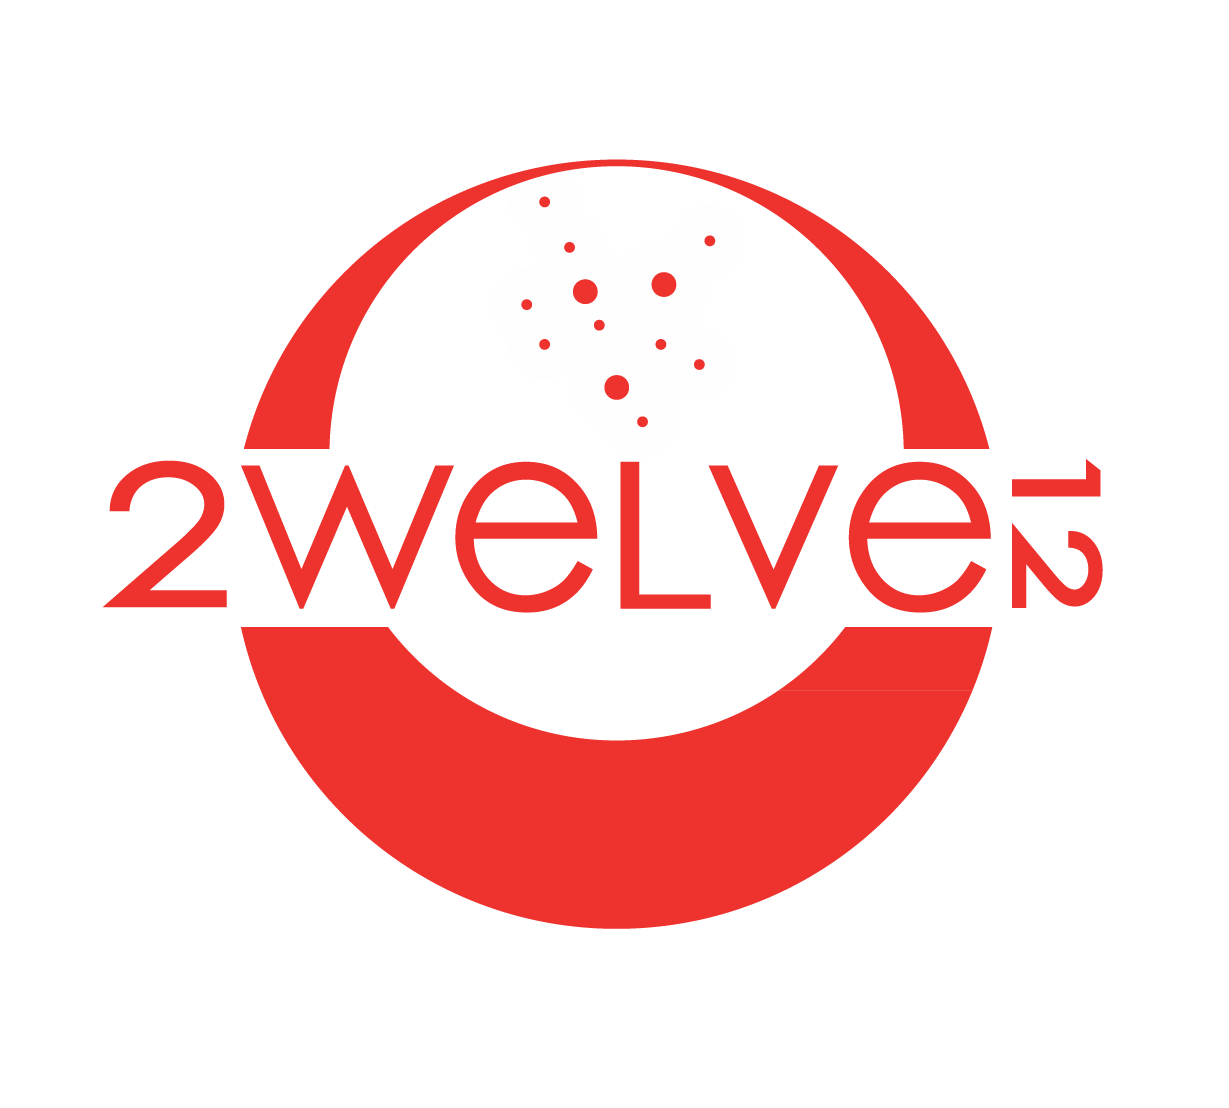 2welve12